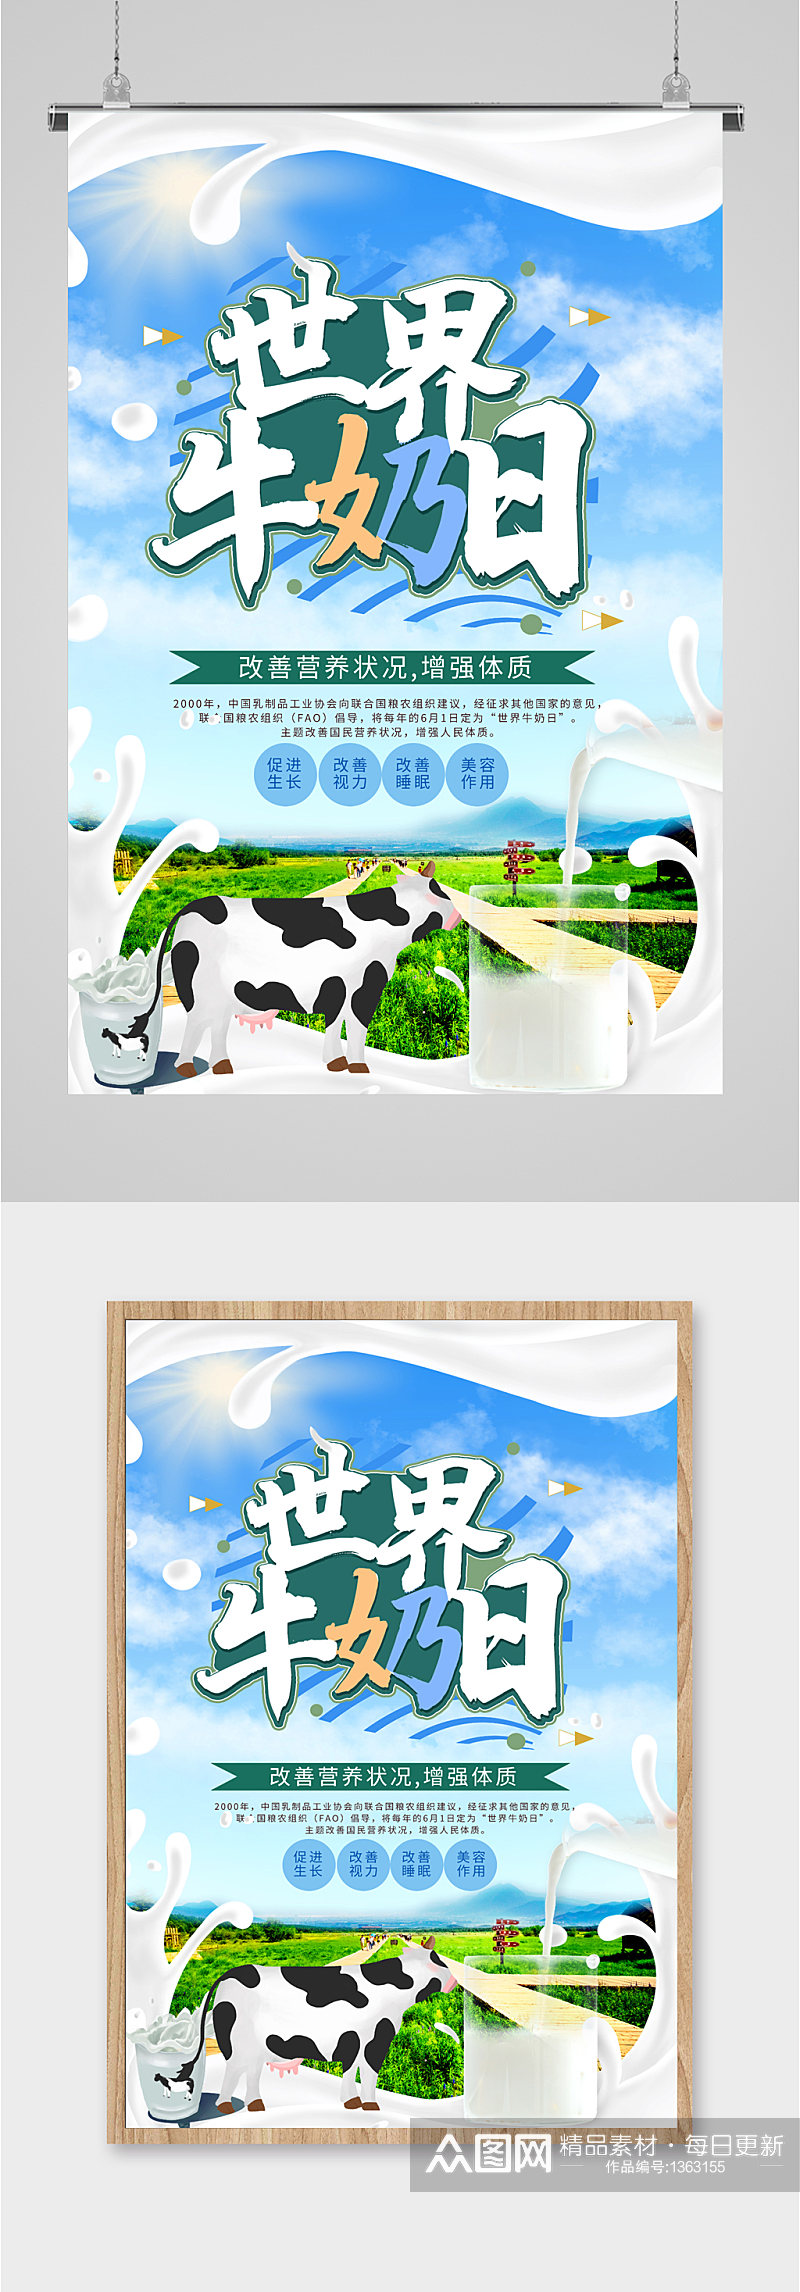 世界牛奶日宣传 国际世界牛奶日海报素材